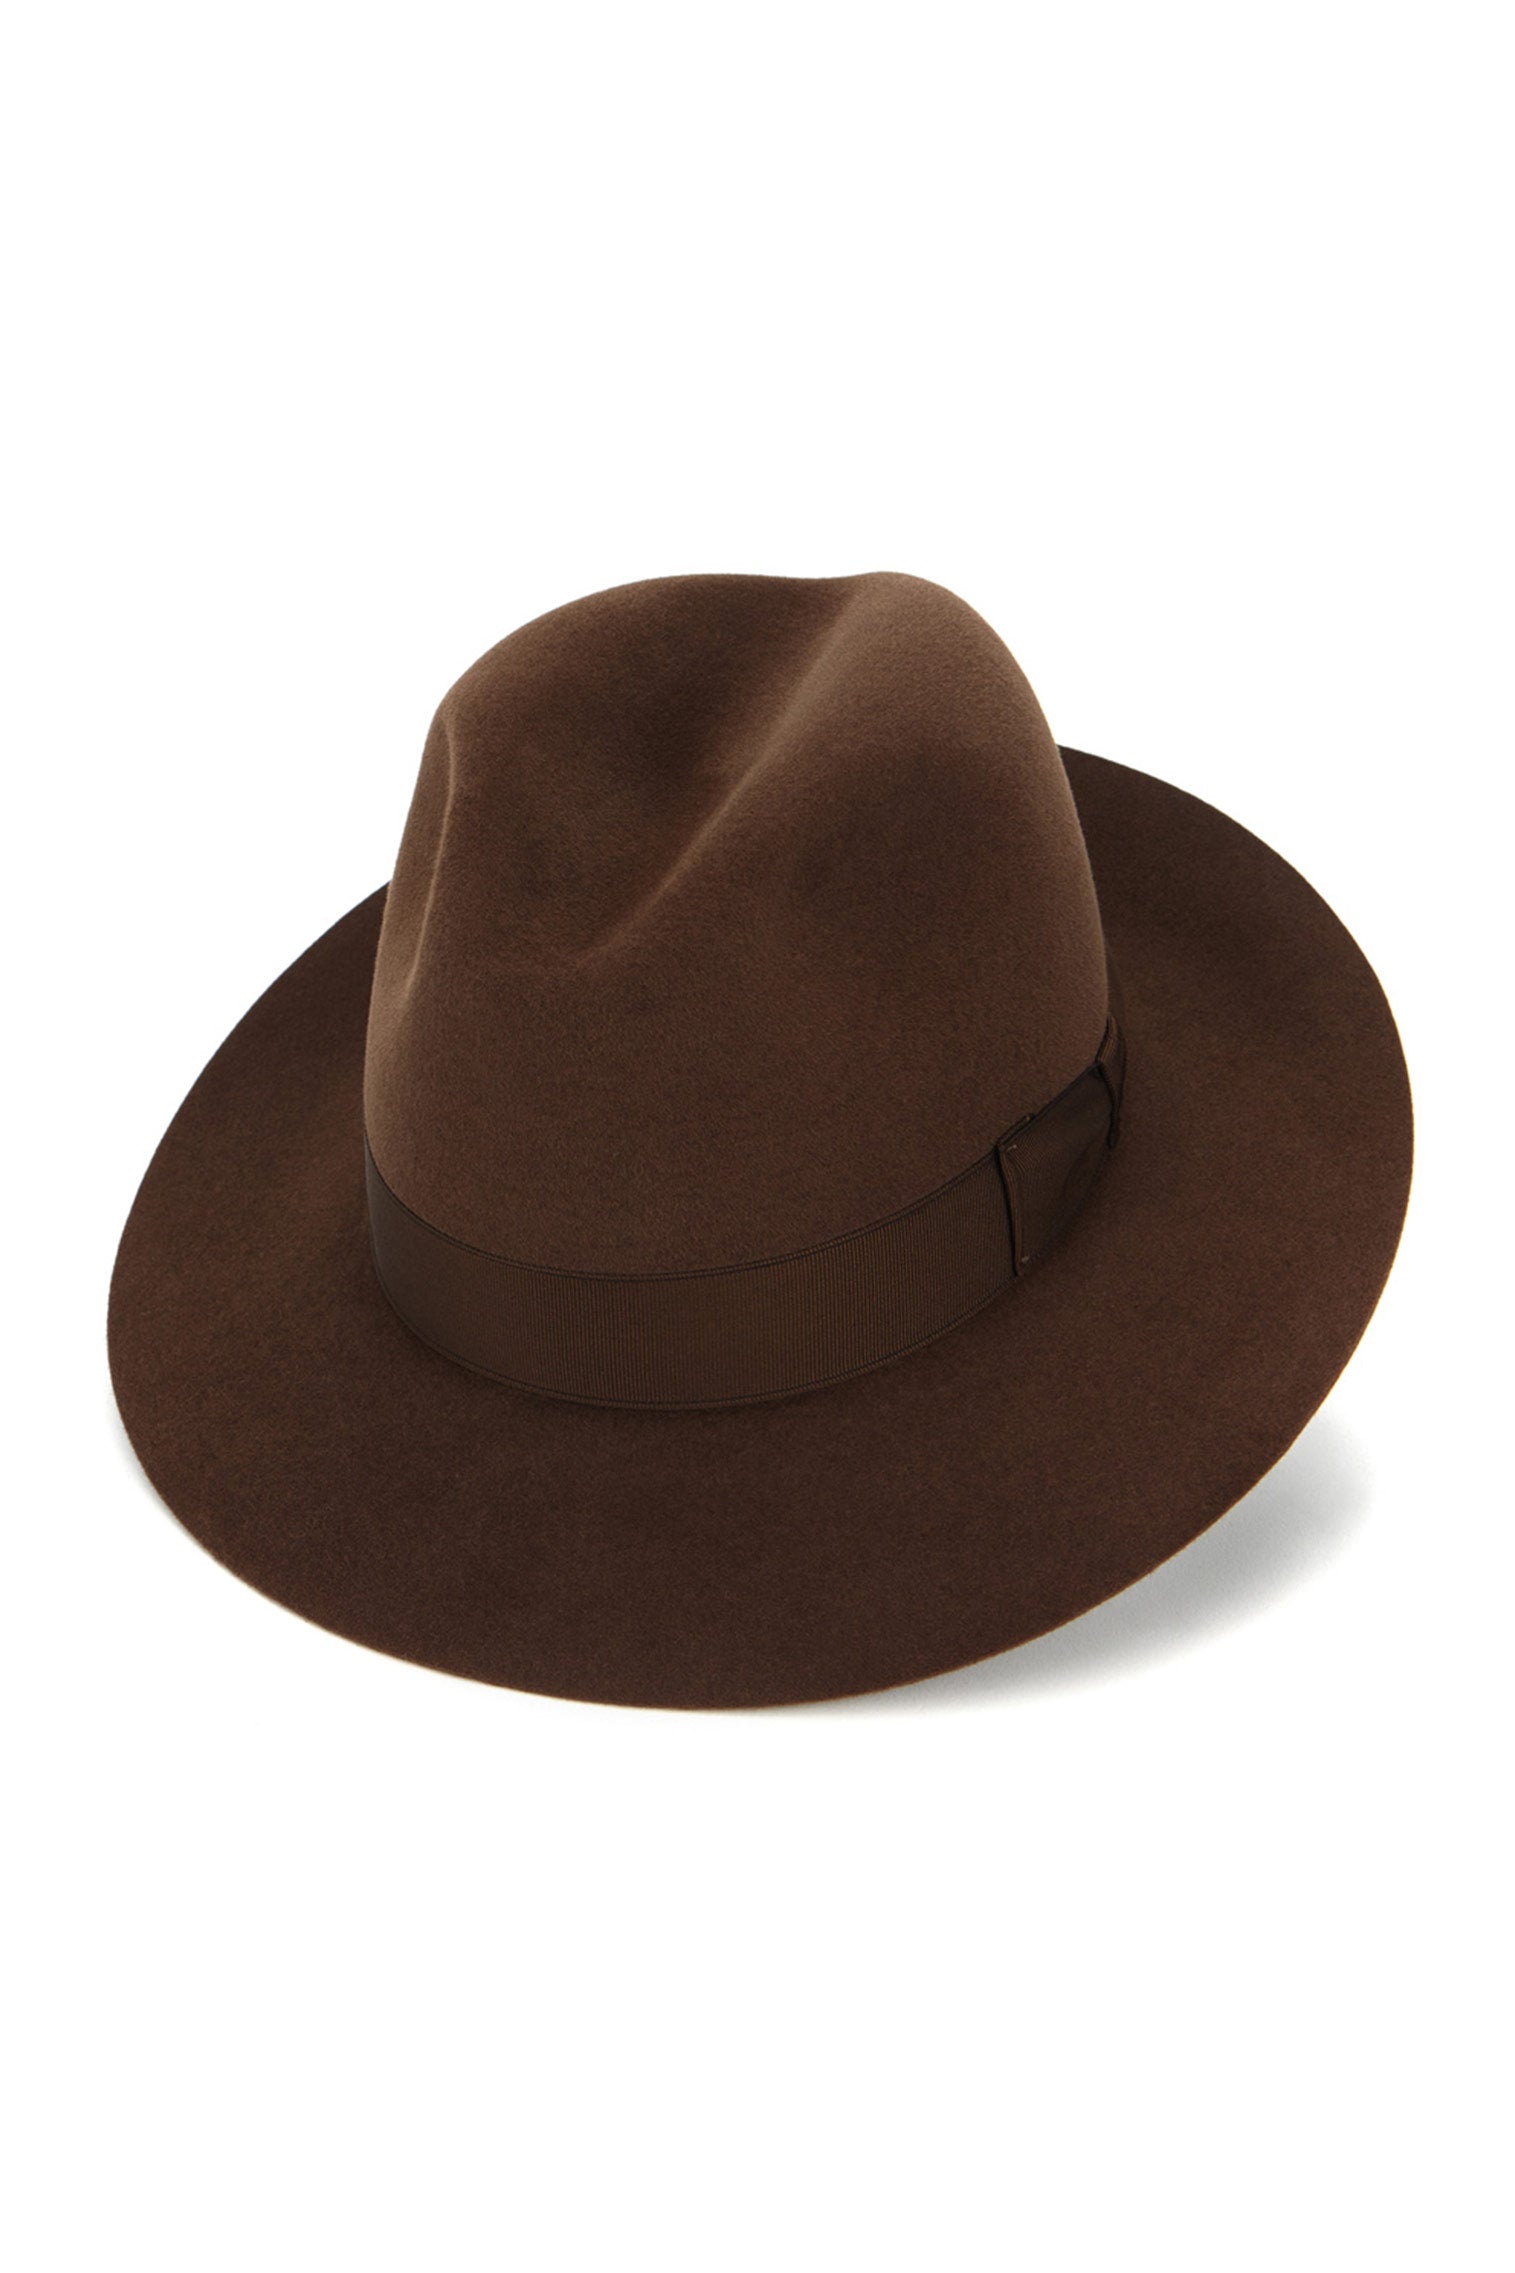 Haydock Fedora - Best Selling Hats - Lock & Co. Hatters London UK